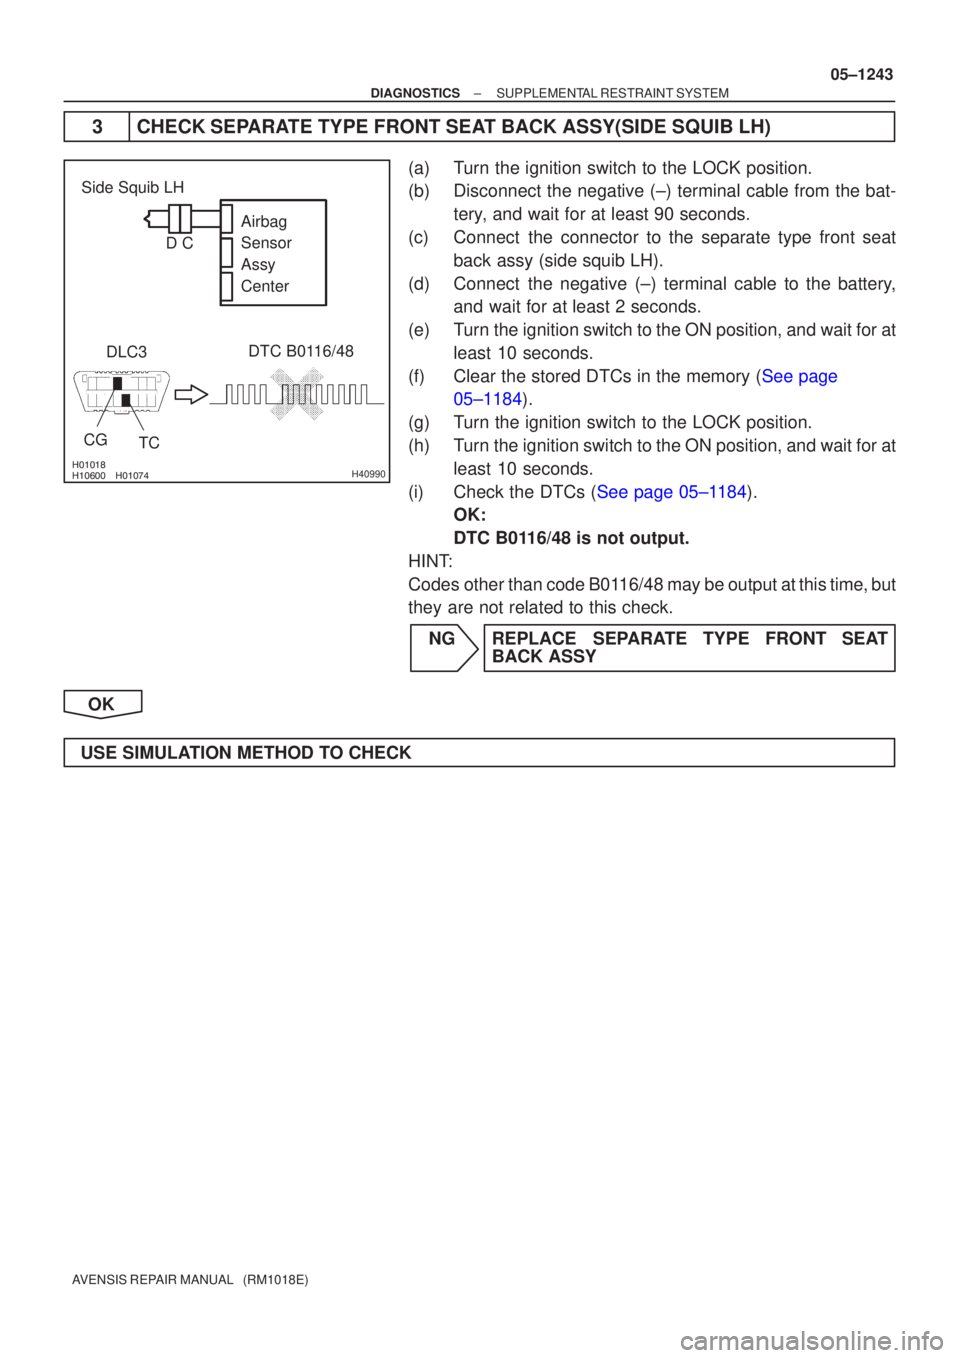 TOYOTA AVENSIS 2005  Service Repair Manual 
 H40990
DLC3DTC B0116/48
TC
CG
Side Squib LH
Airbag 
Sensor 
Assy
Center
DC
±
DIAGNOSTICS SUPPLEMENTAL RESTRAINT SYSTEM
05±1243
AVENSIS REPAIR MANUAL   (RM1018E)
3 CHECK SEPARATE 